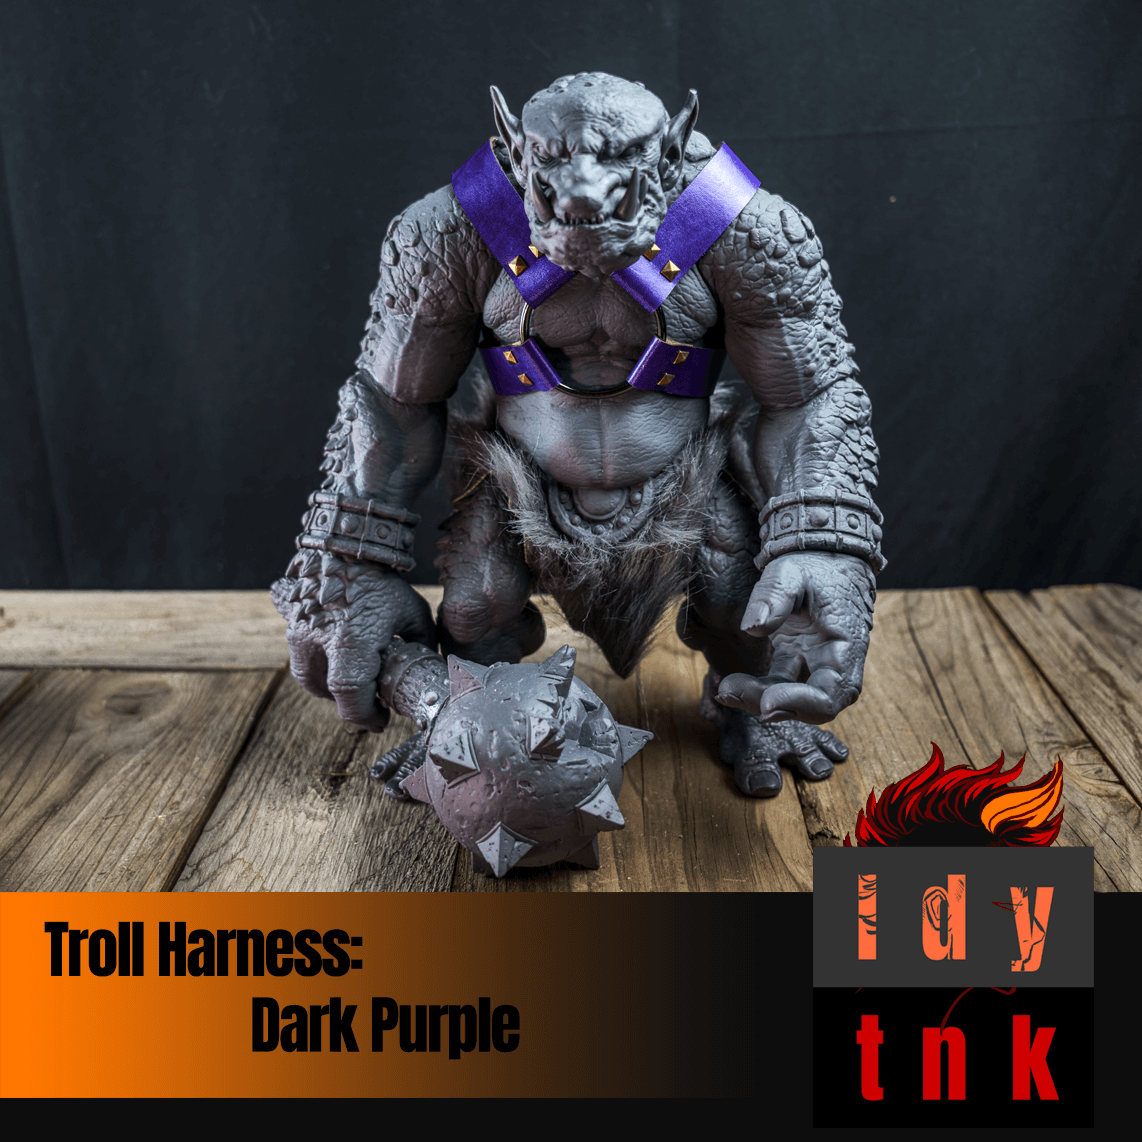 Troll Harness: Purples